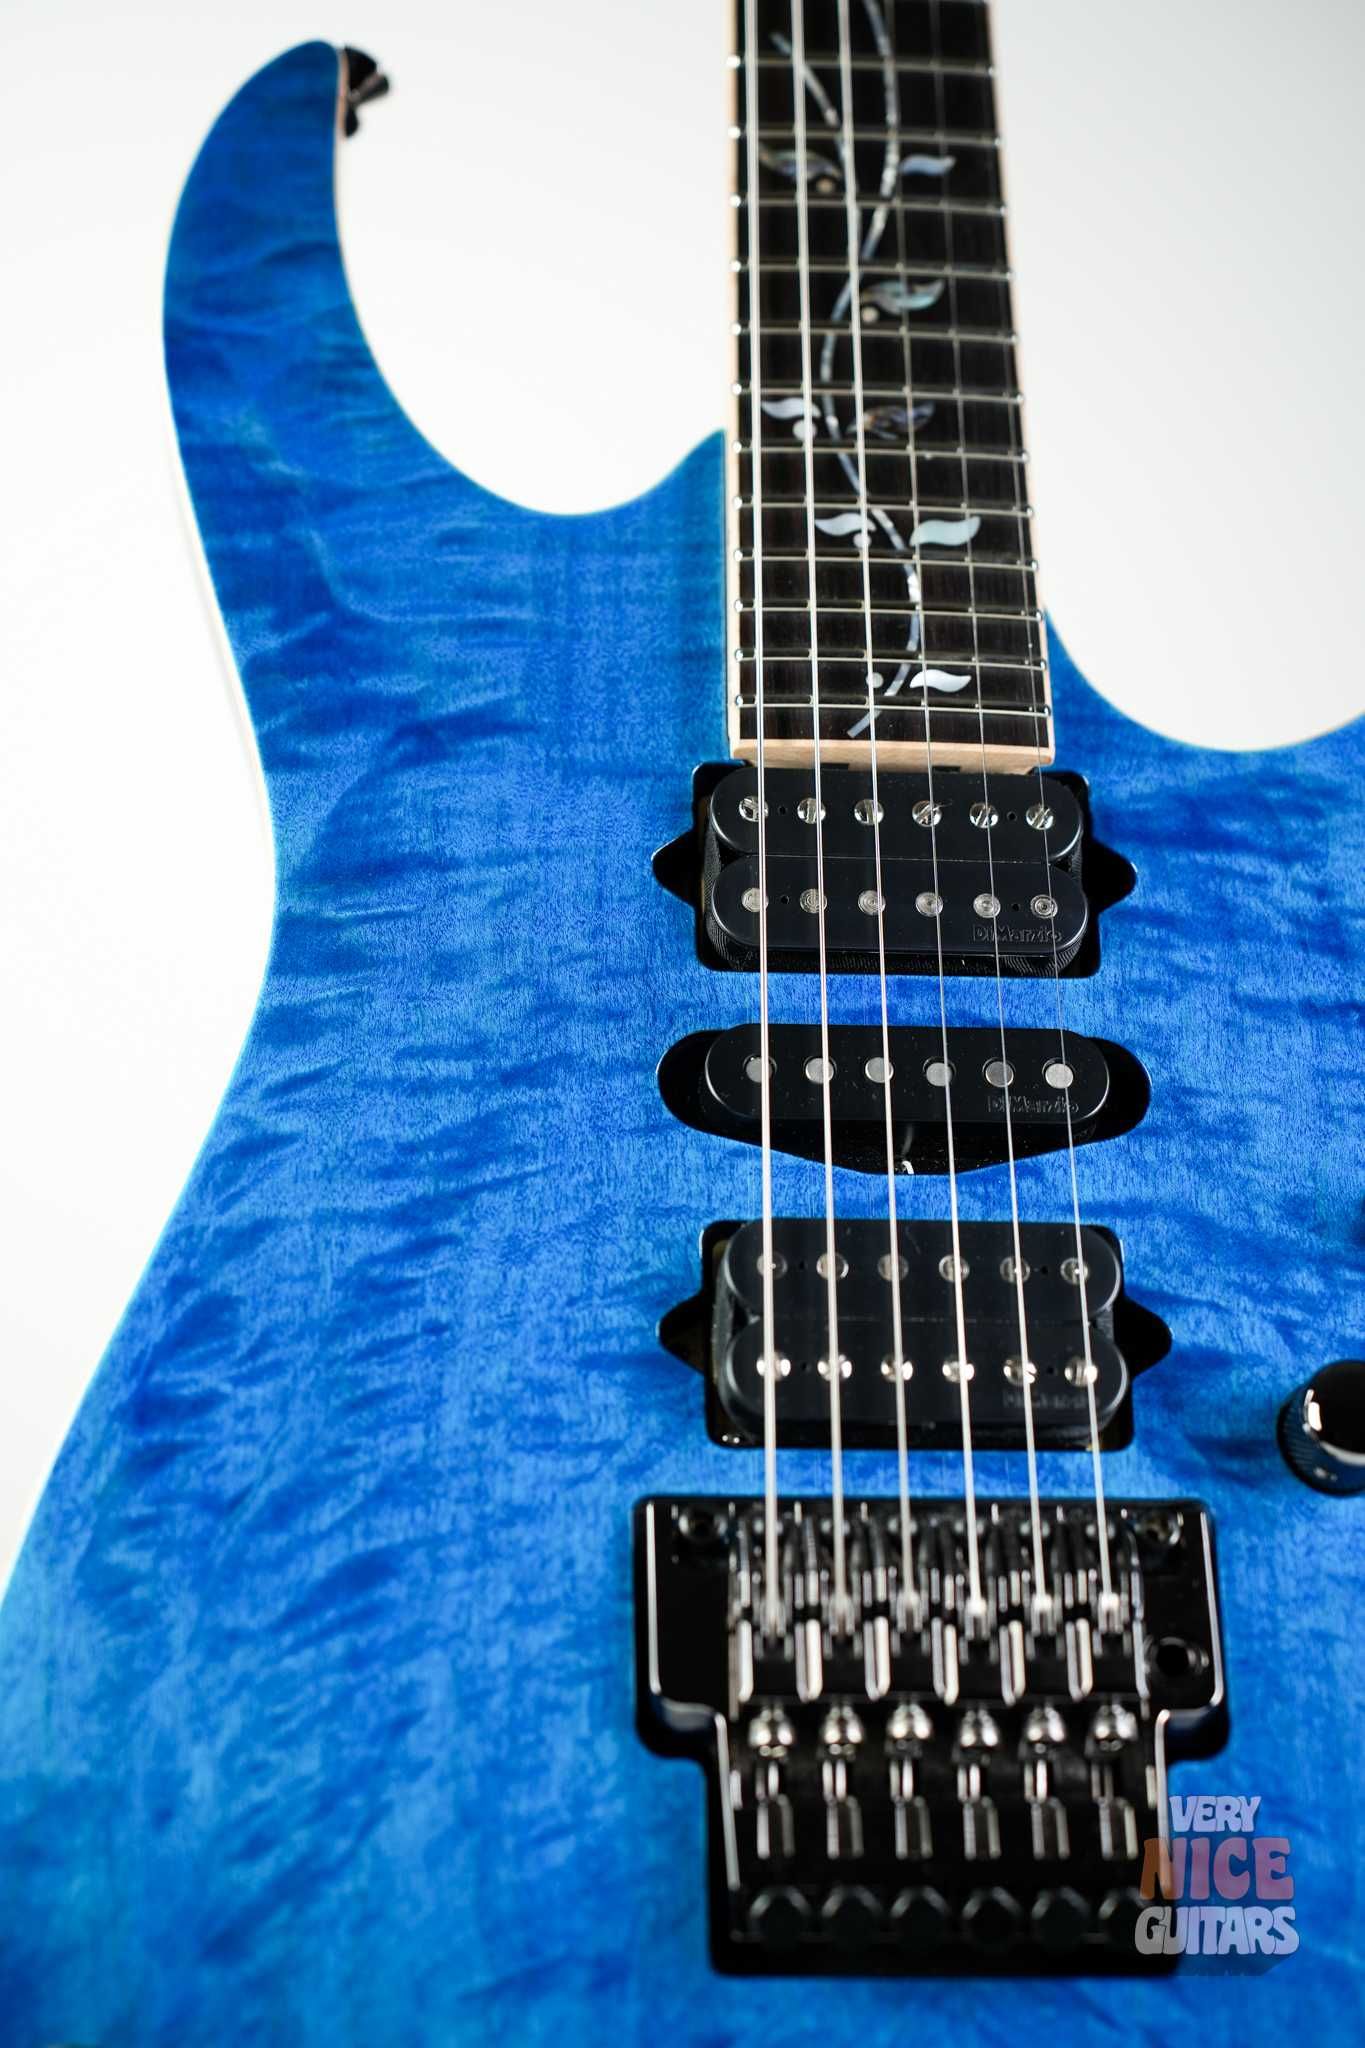 Ibanez RG8570 japońska gitara elektryczna z najwyższej półki